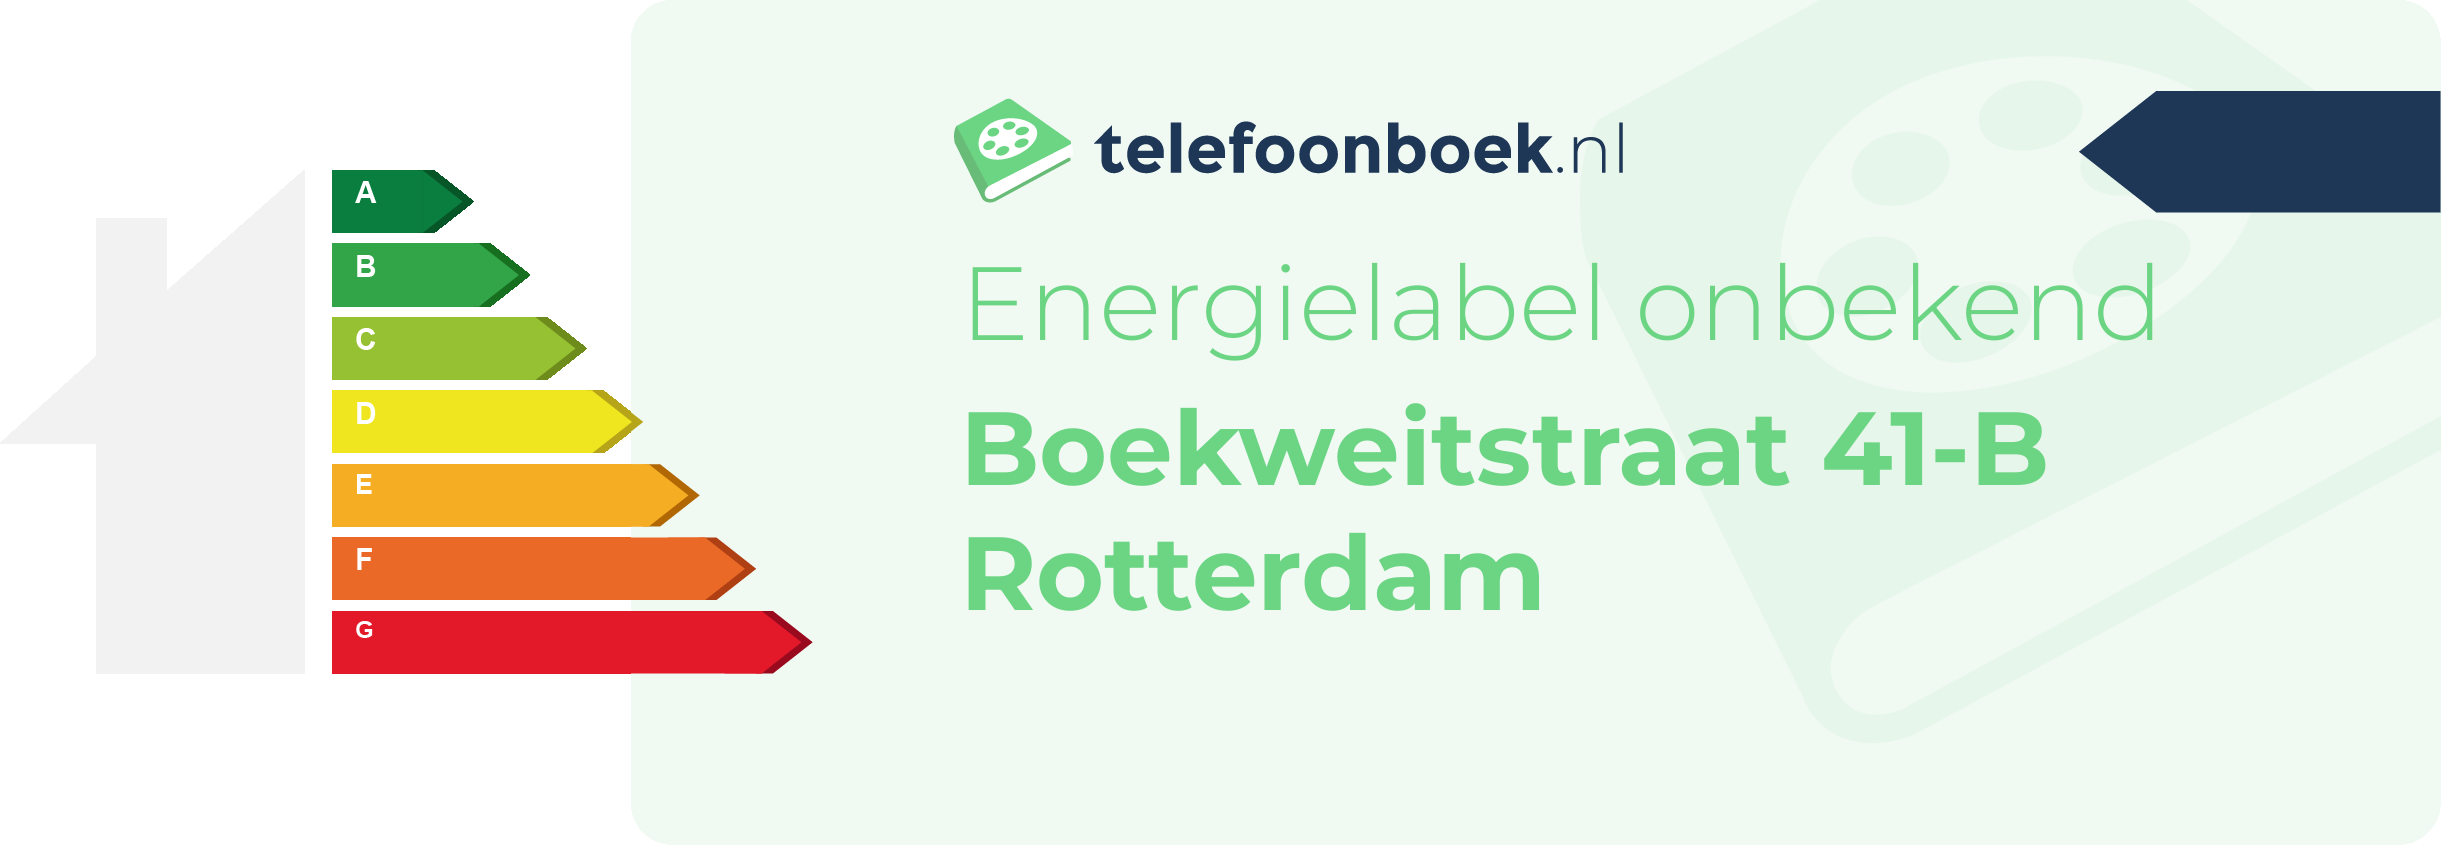 Energielabel Boekweitstraat 41-B Rotterdam